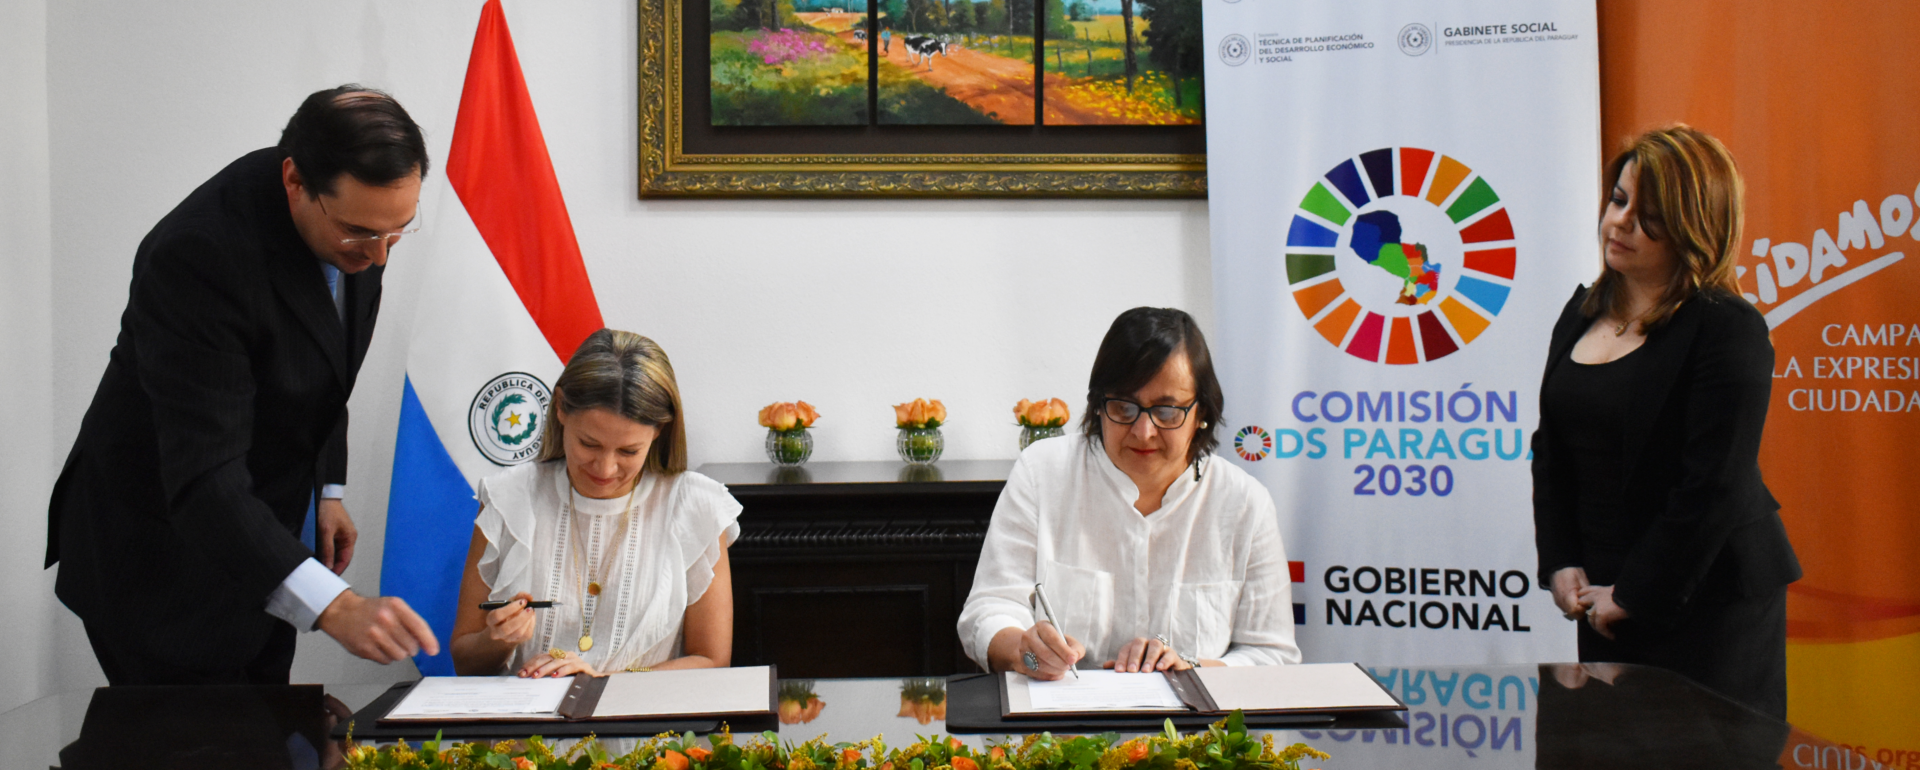 Decidamos y Comisión ODS Paraguay se comprometen a trabajar para el logro de los Objetivos de Desarrollo Sostenible